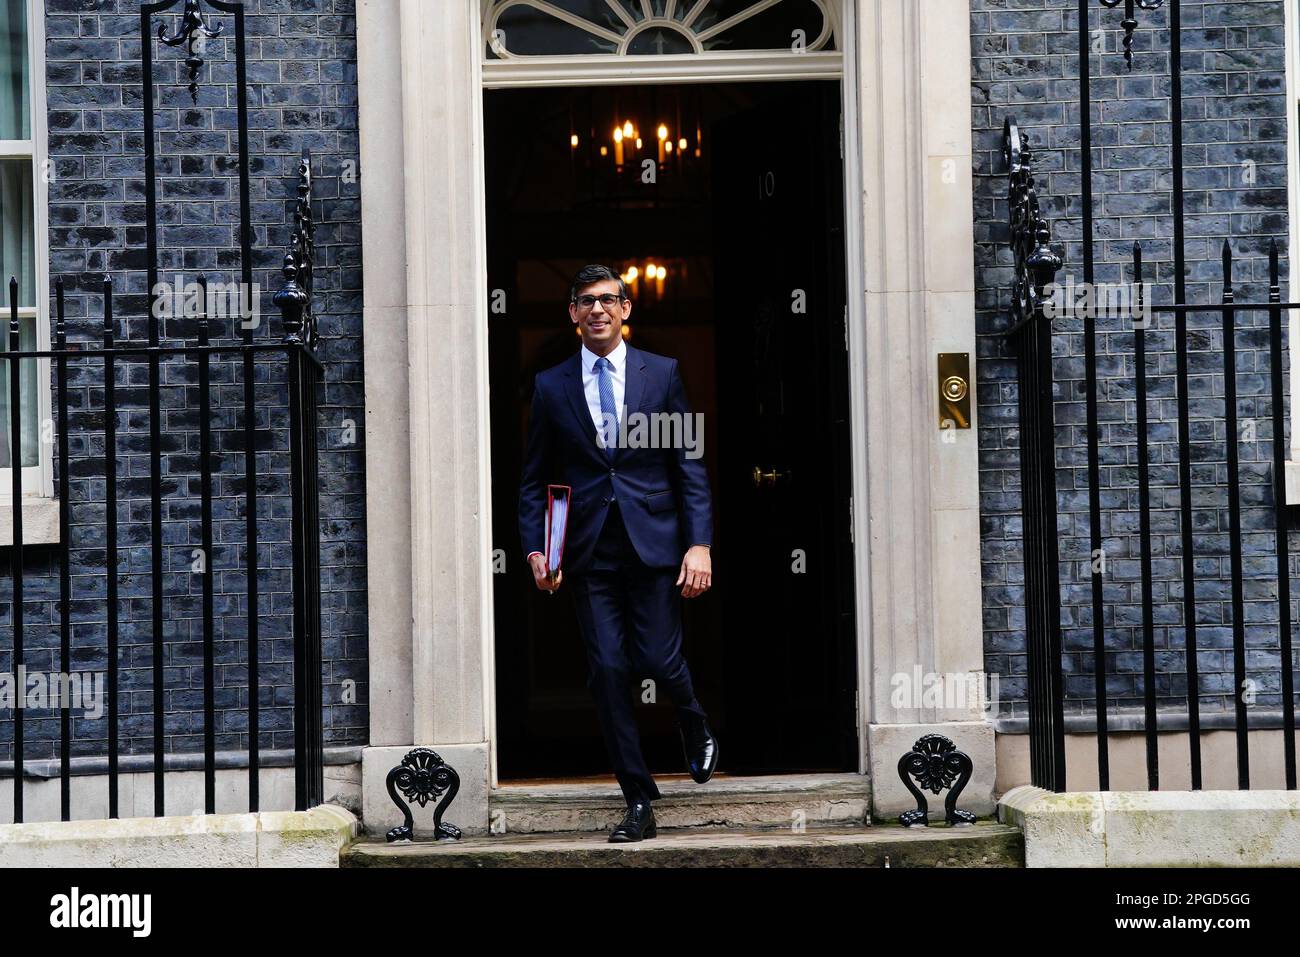 Le Premier ministre Rishi Sunak quitte le 10 Downing Street, Londres, pour assister aux questions du Premier ministre au Parlement. Date de la photo: Mercredi 22 mars 2023. Banque D'Images